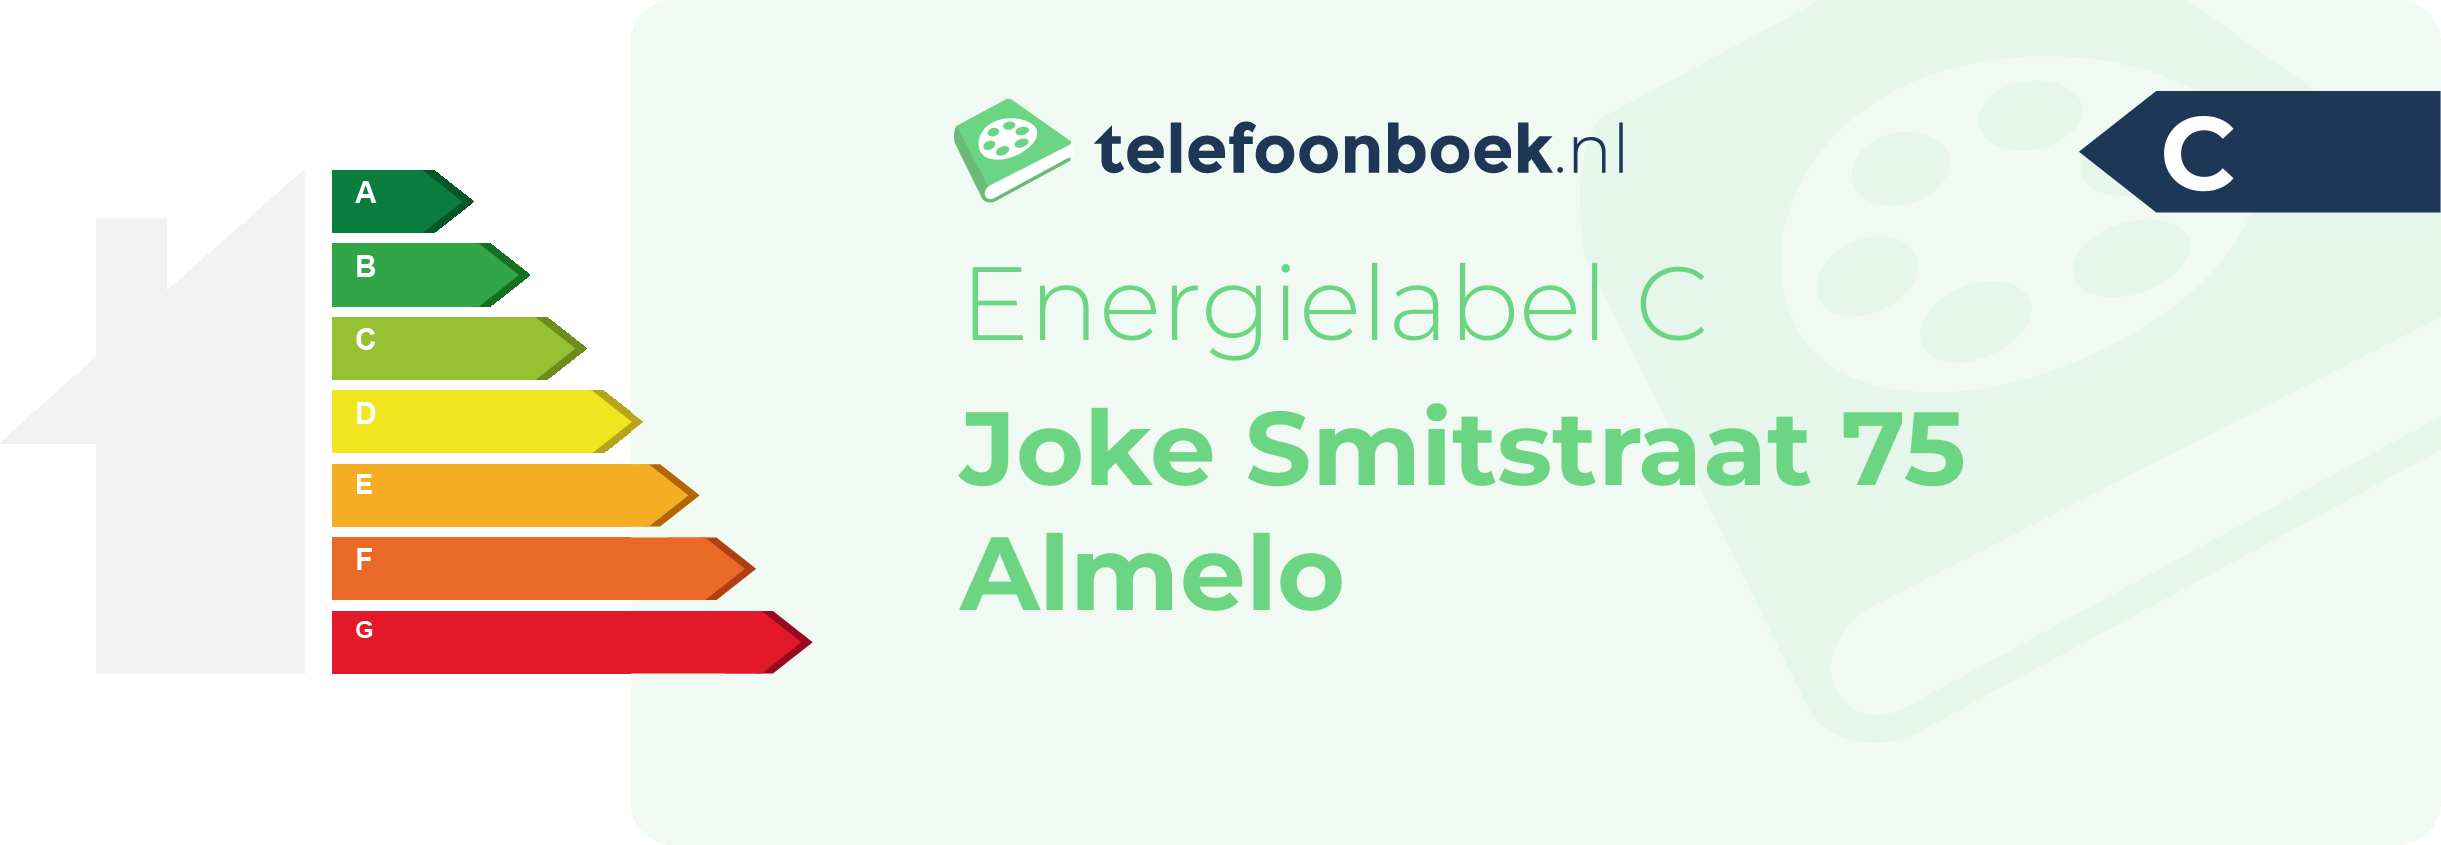 Energielabel Joke Smitstraat 75 Almelo